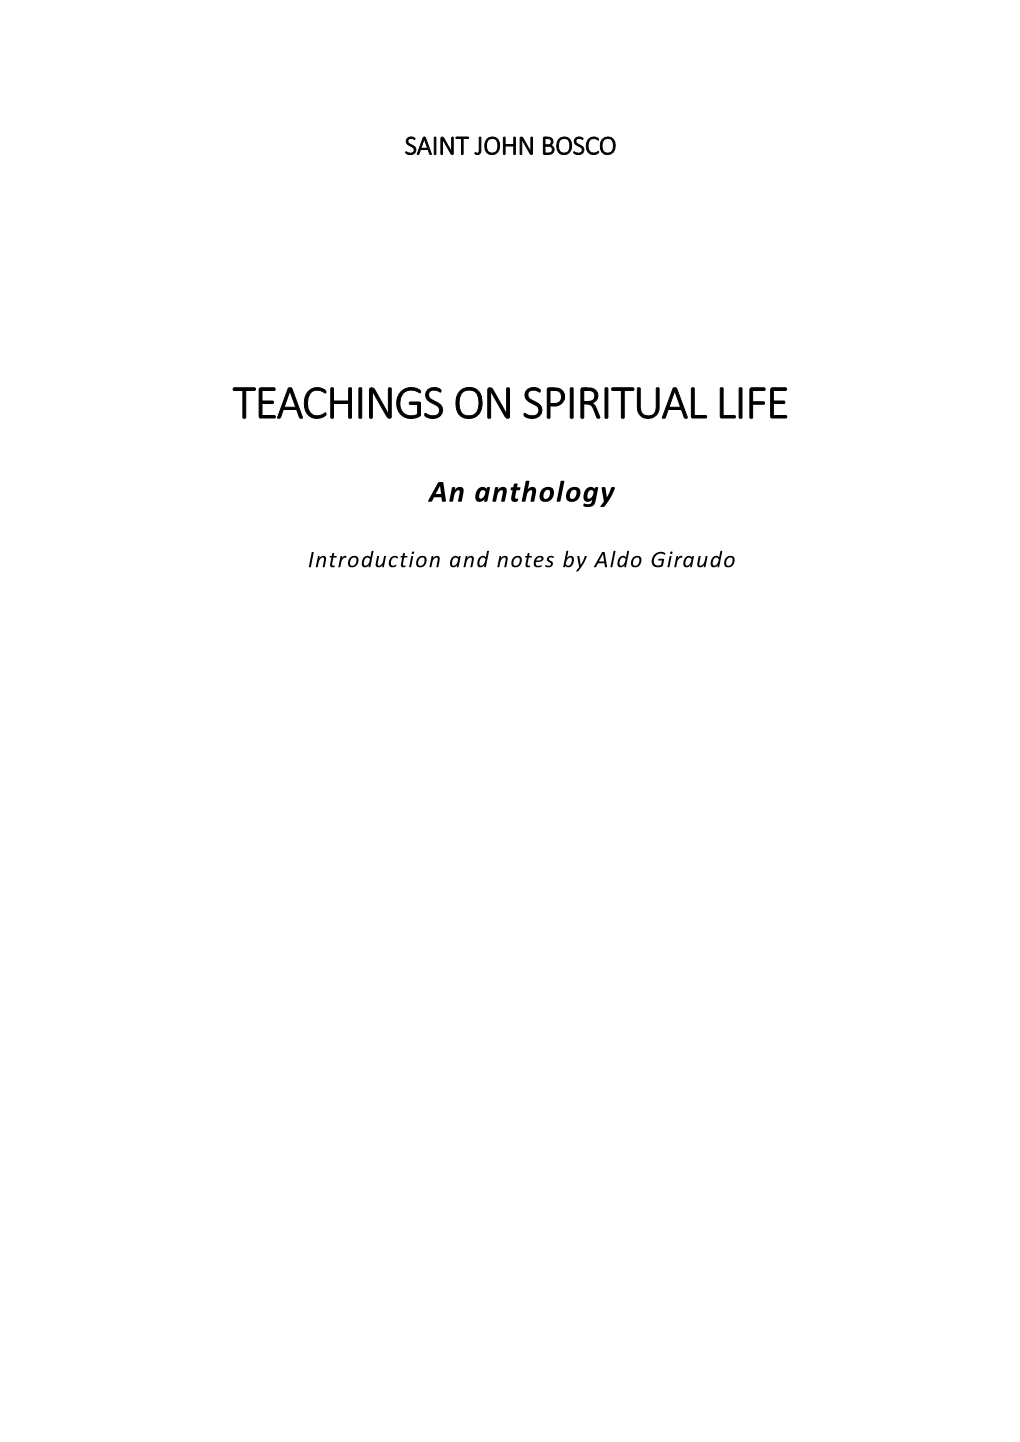 Teachings on Spiritual Life